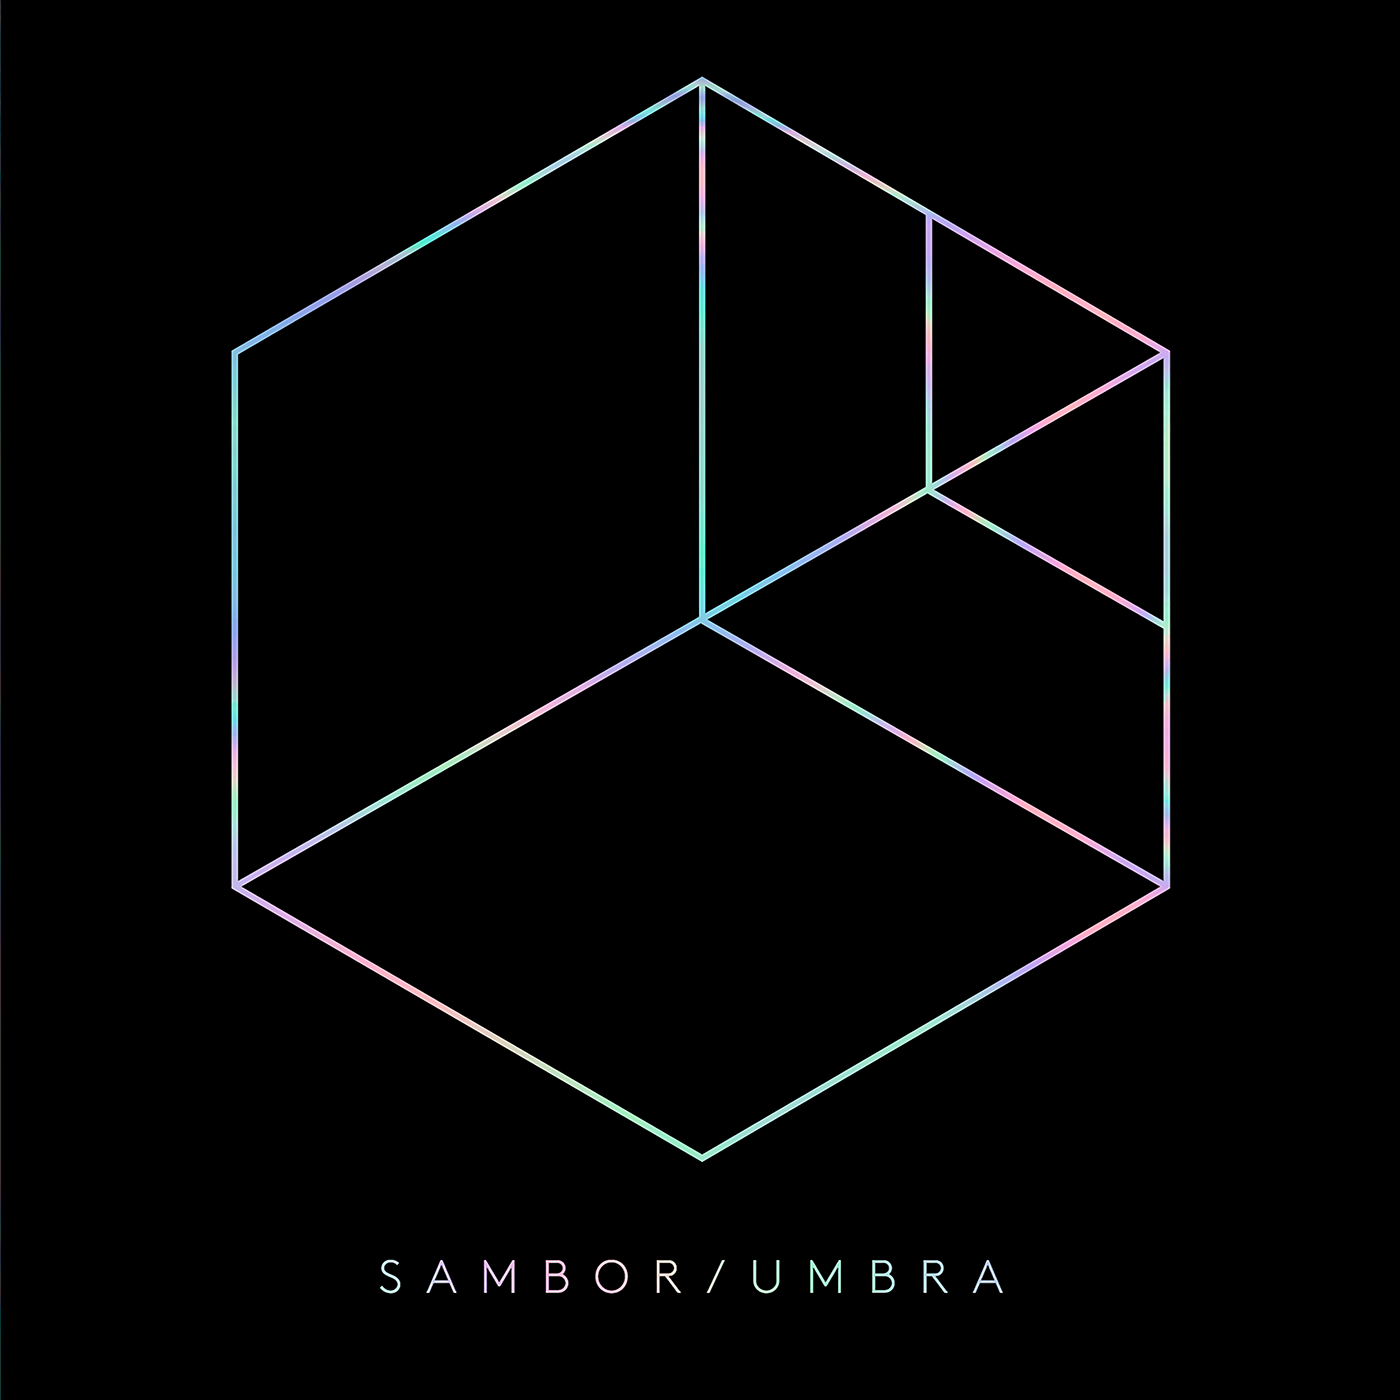 music cover Album minimal geometry